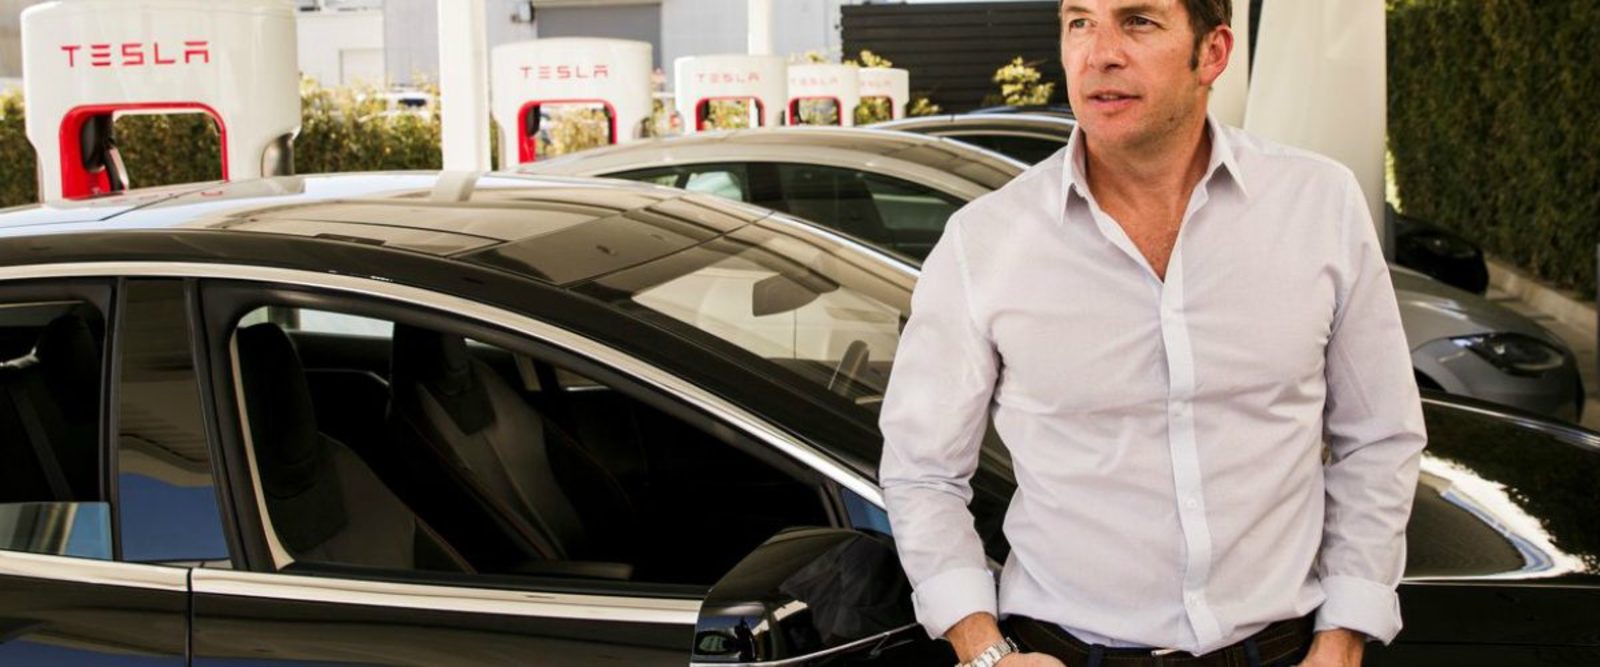 Proyectos. Desde 2012, el mexicano Javier Verdura trabaja en la firma del excéntrico Elon Musk.